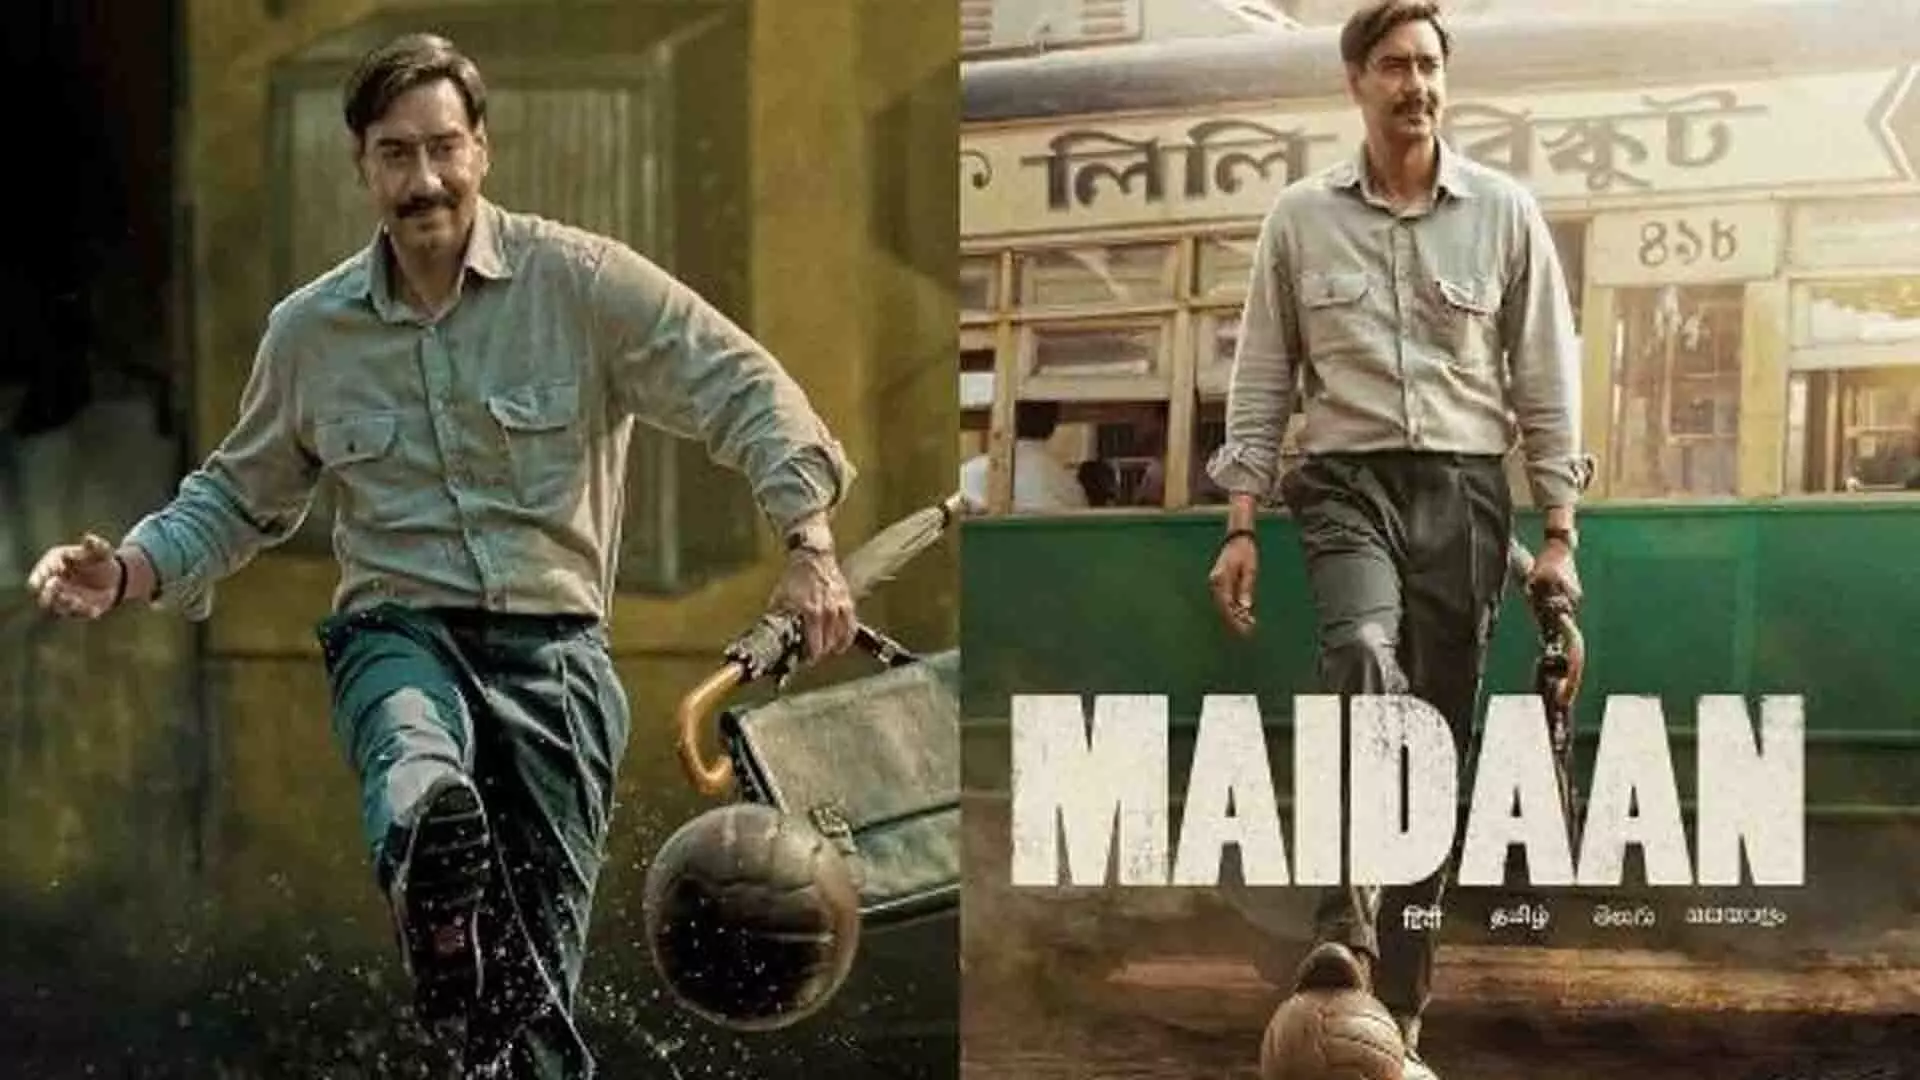 Maidaan First Day Advance Booking: लोगों के सिर चढ़ा अजय देवगन का खुमार! एडवांस बुकिंग में ही छप्पड़ फाड़ कमाई कर रही उनकी फिल्म 'मैदान'